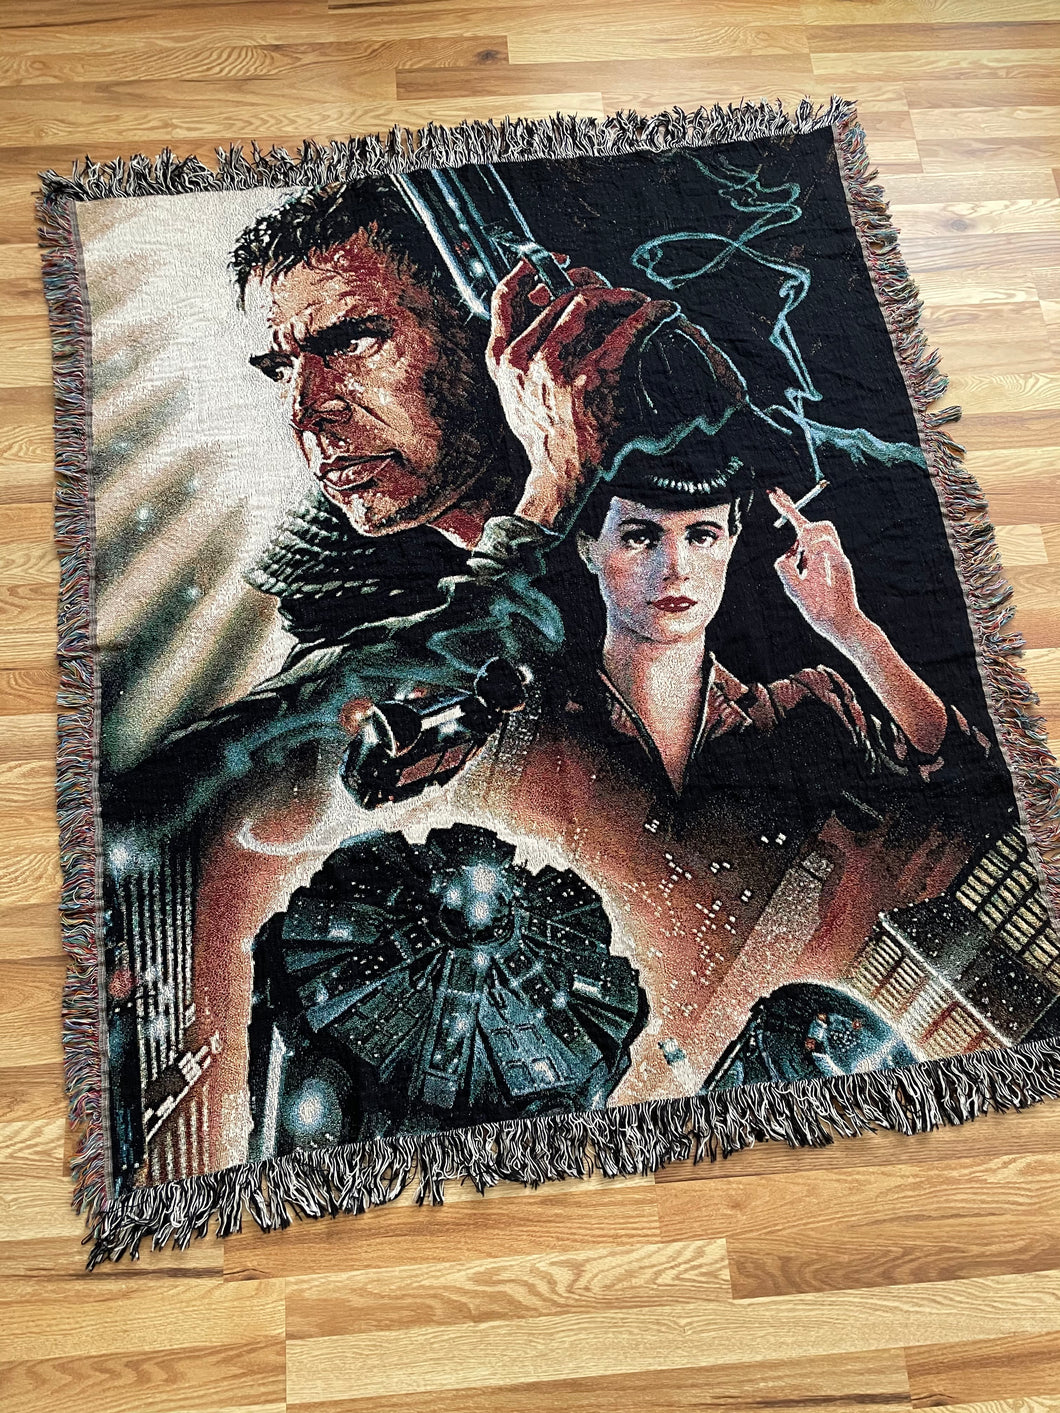 Blade Runner woven blanket / tapestry